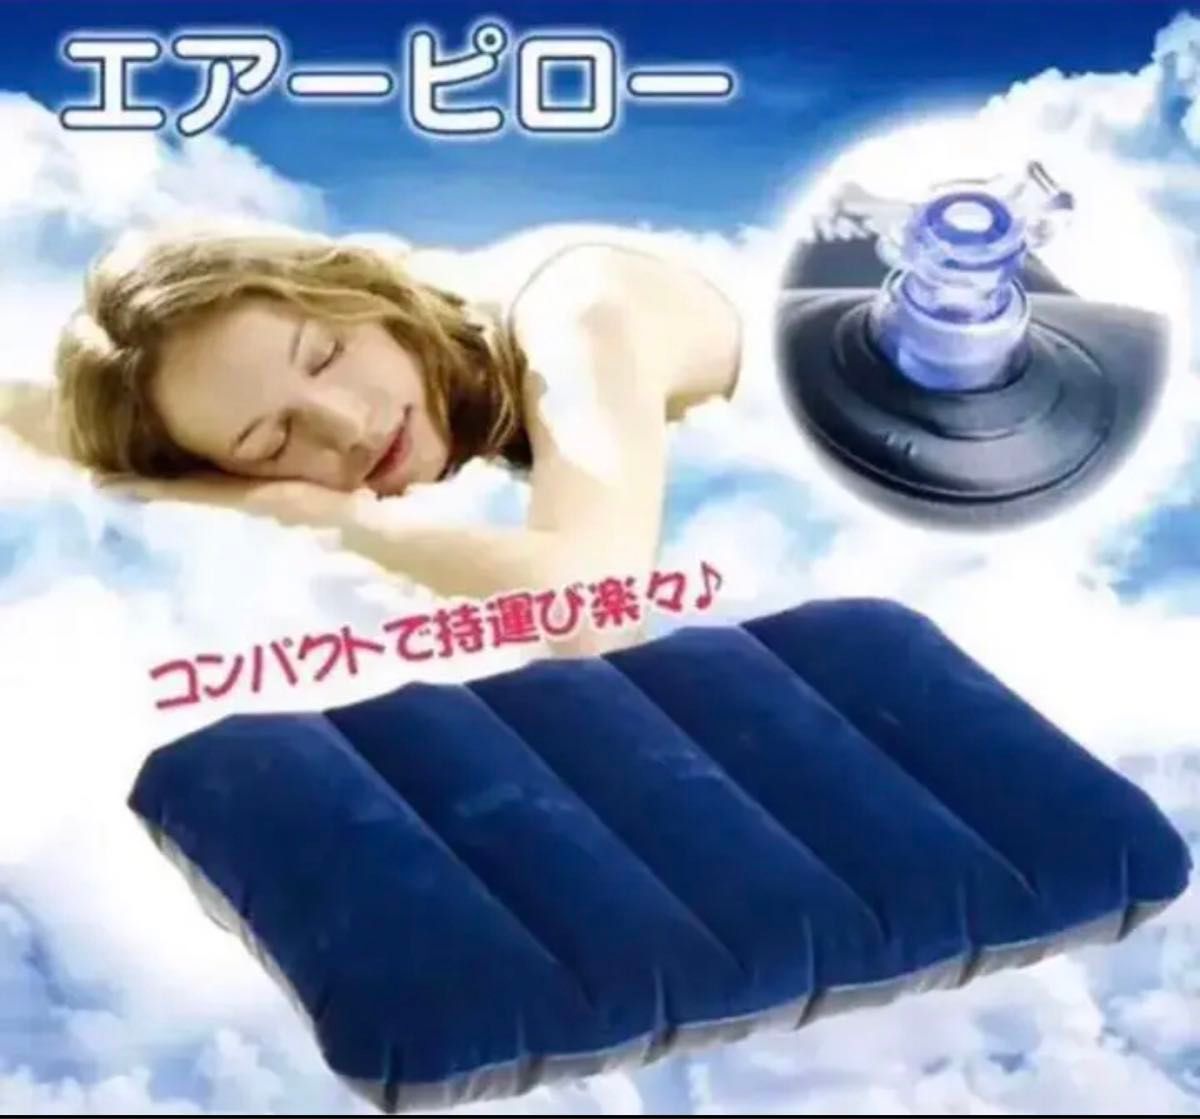 エアーピロー 携帯枕 超軽量 コンパクト トラベルピロ ー エアー枕 旅行枕